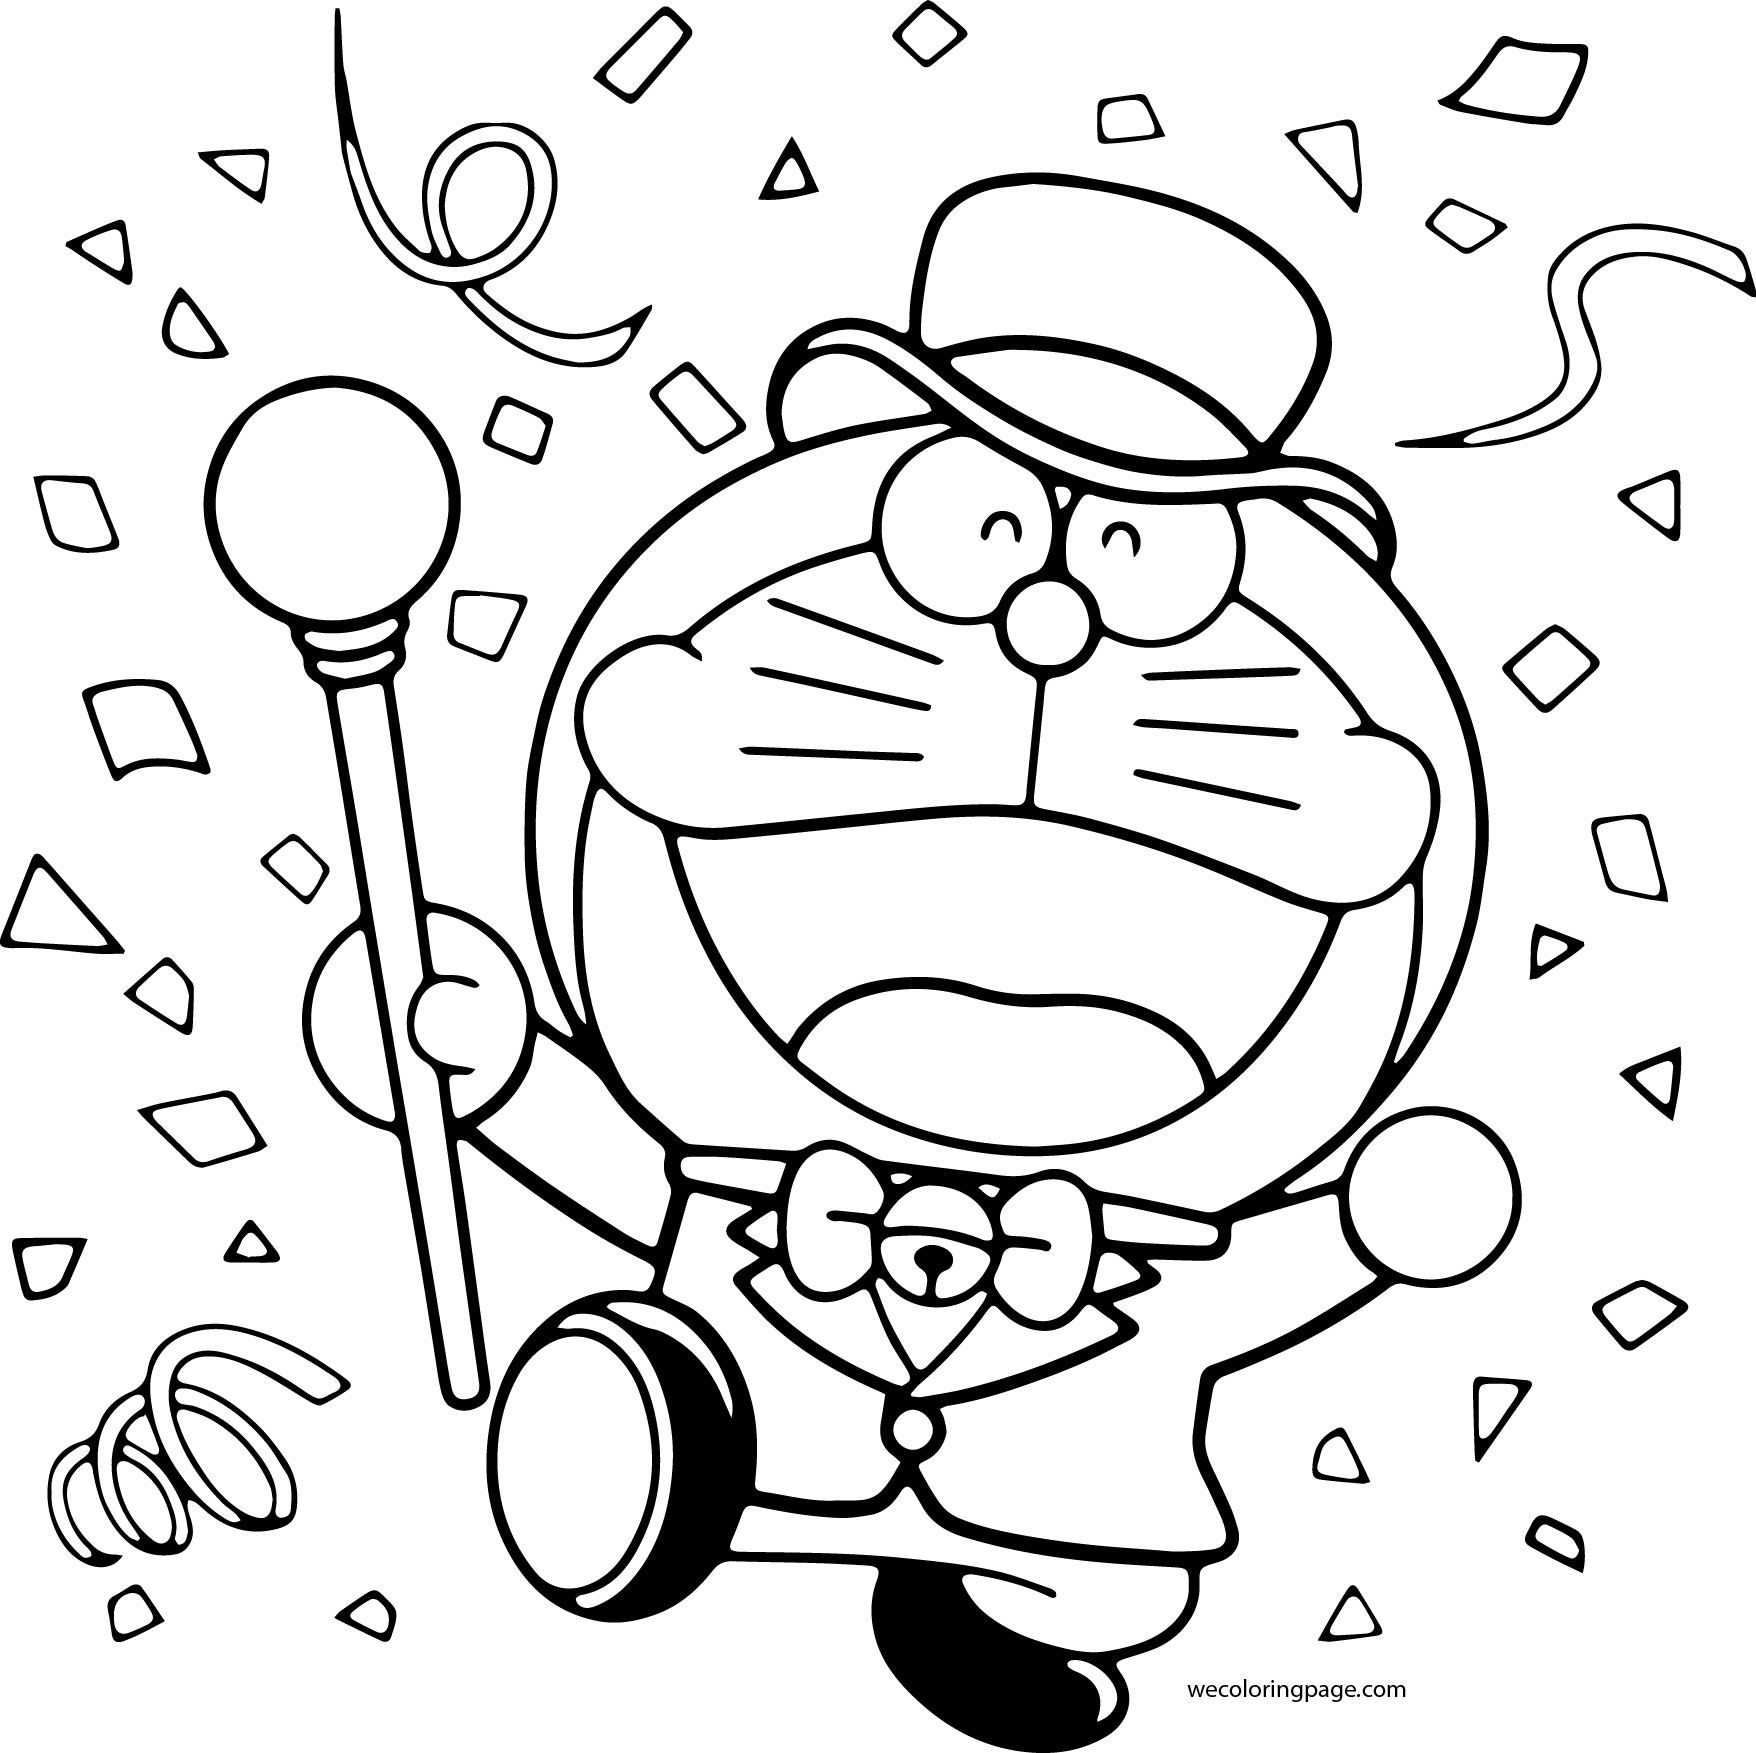 How to Draw Doraemon (Doraemon) Step by Step | DrawingTutorials101.com